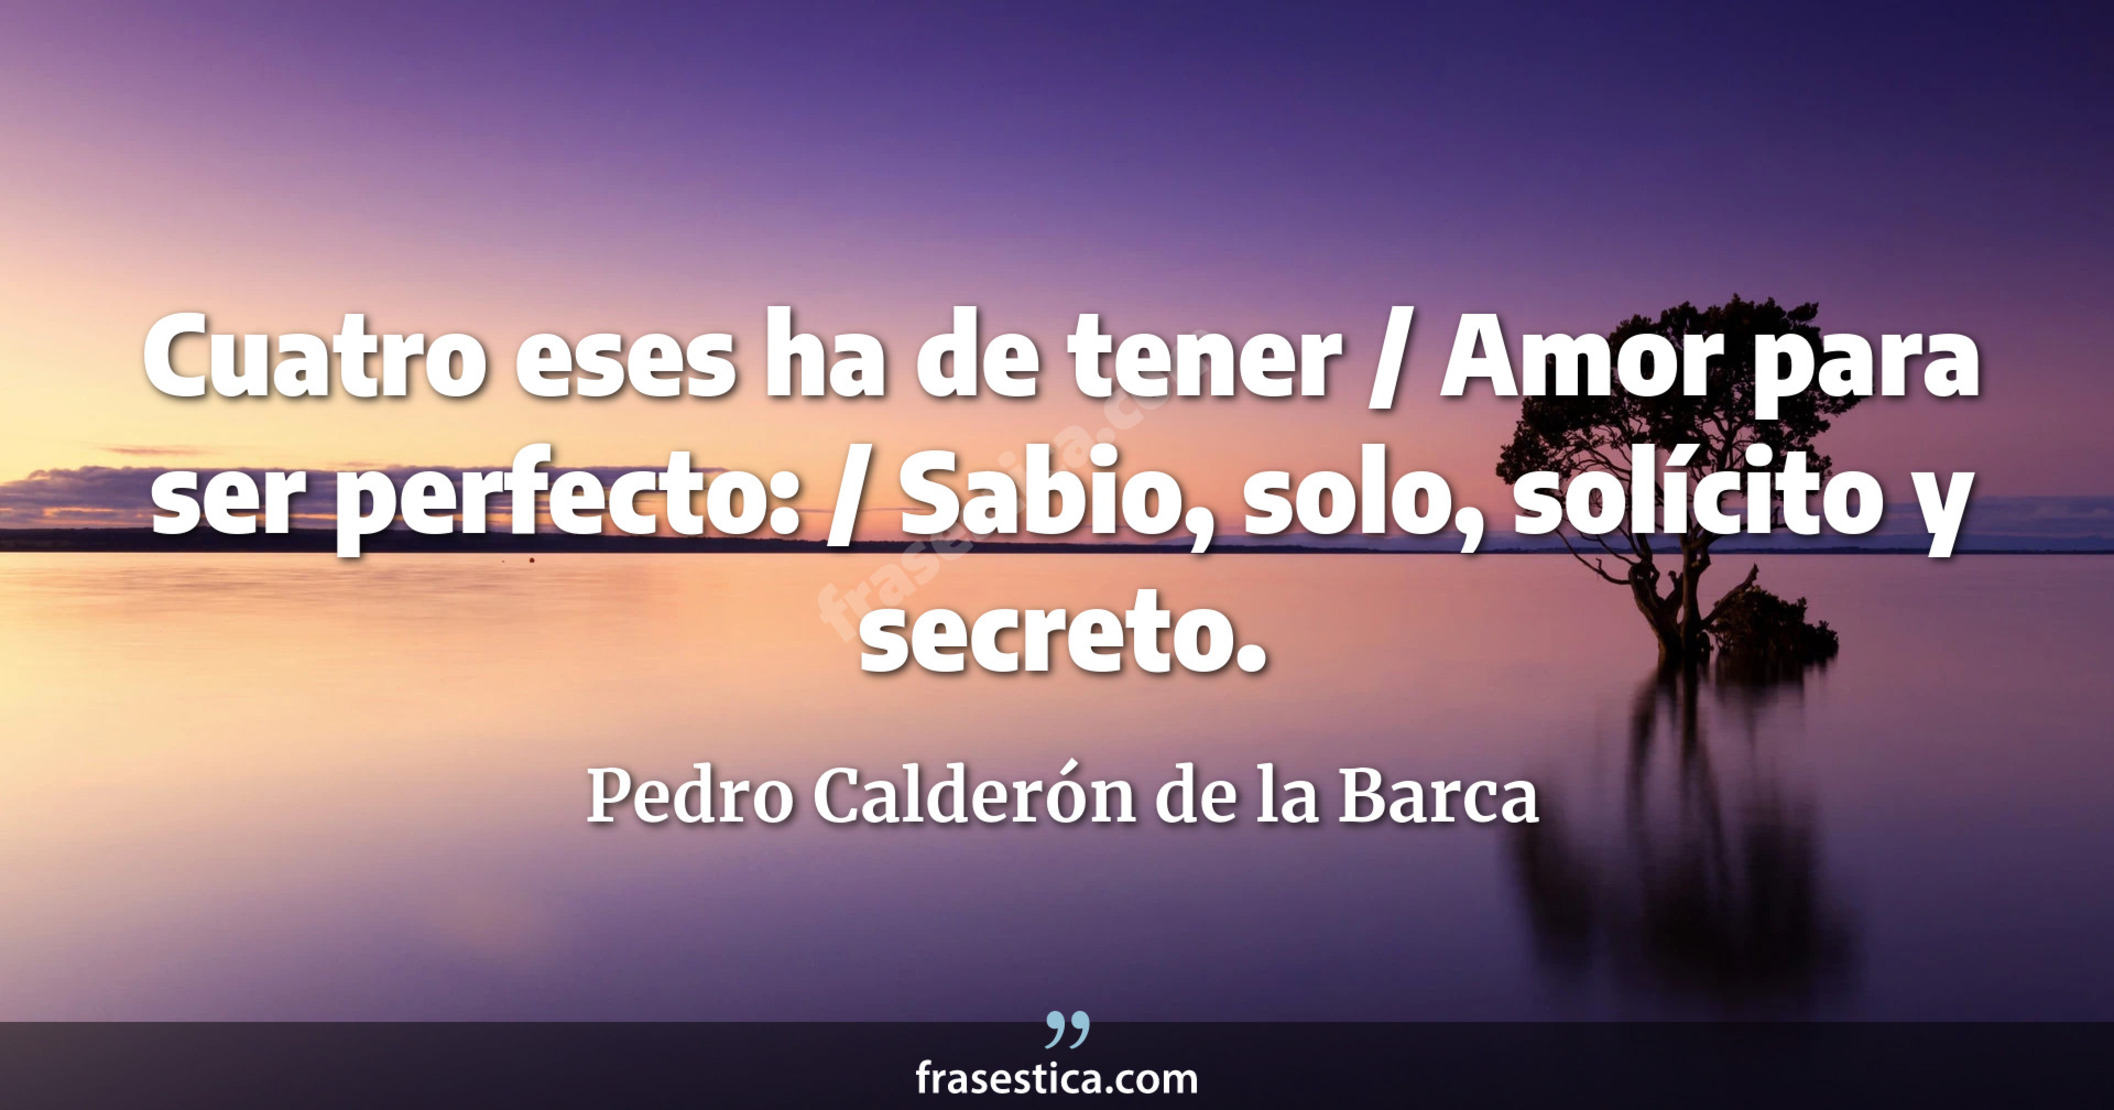 Cuatro eses ha de tener / Amor para ser perfecto: / Sabio, solo, solícito y secreto. - Pedro Calderón de la Barca